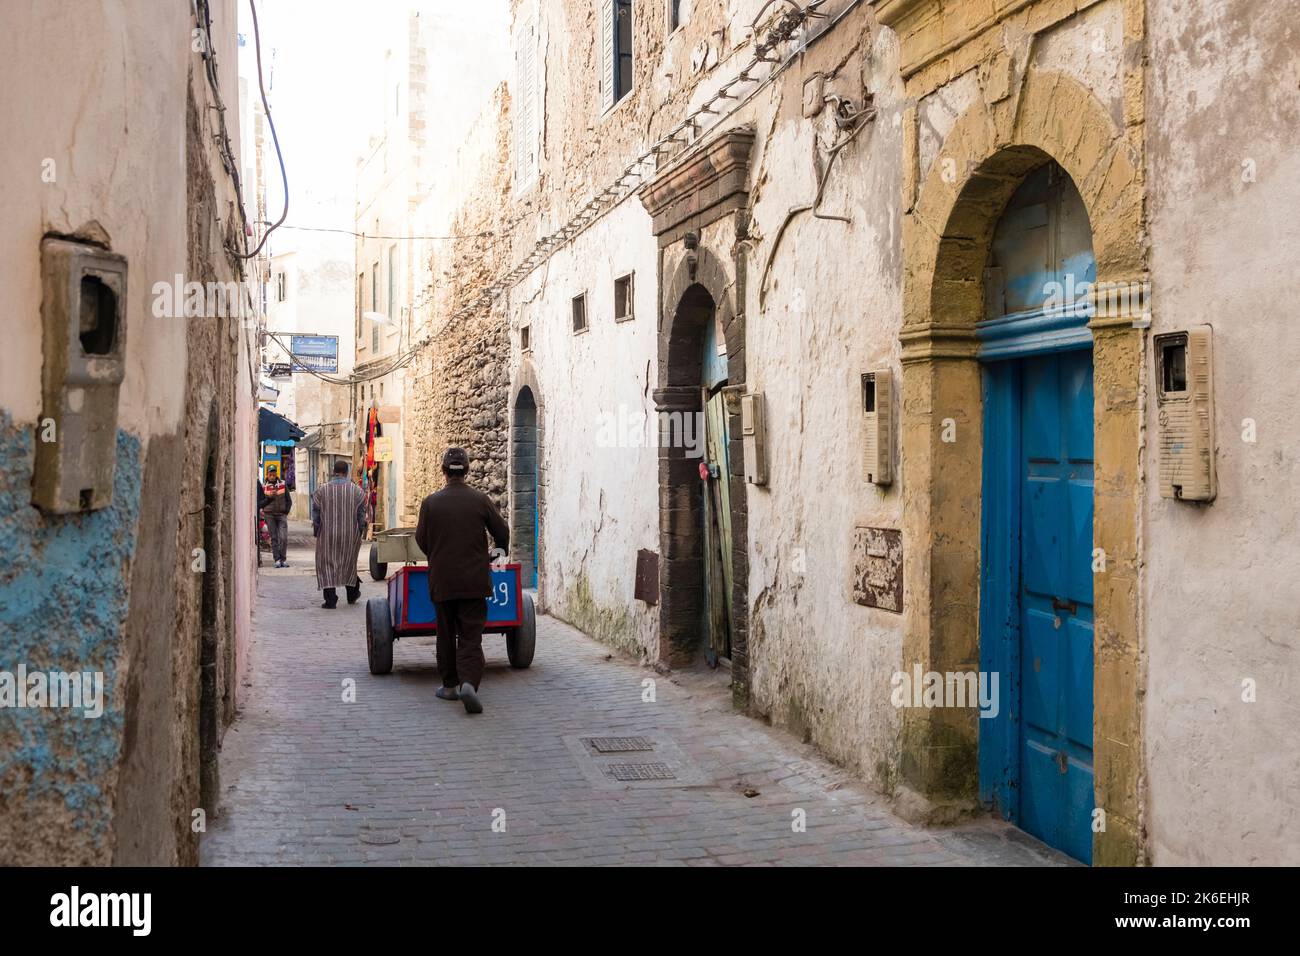 L'homme pousse le chariot de livraison dans une rue étroite de la vieille ville historique medina à Essaouira, Maroc, Afrique du Nord Banque D'Images